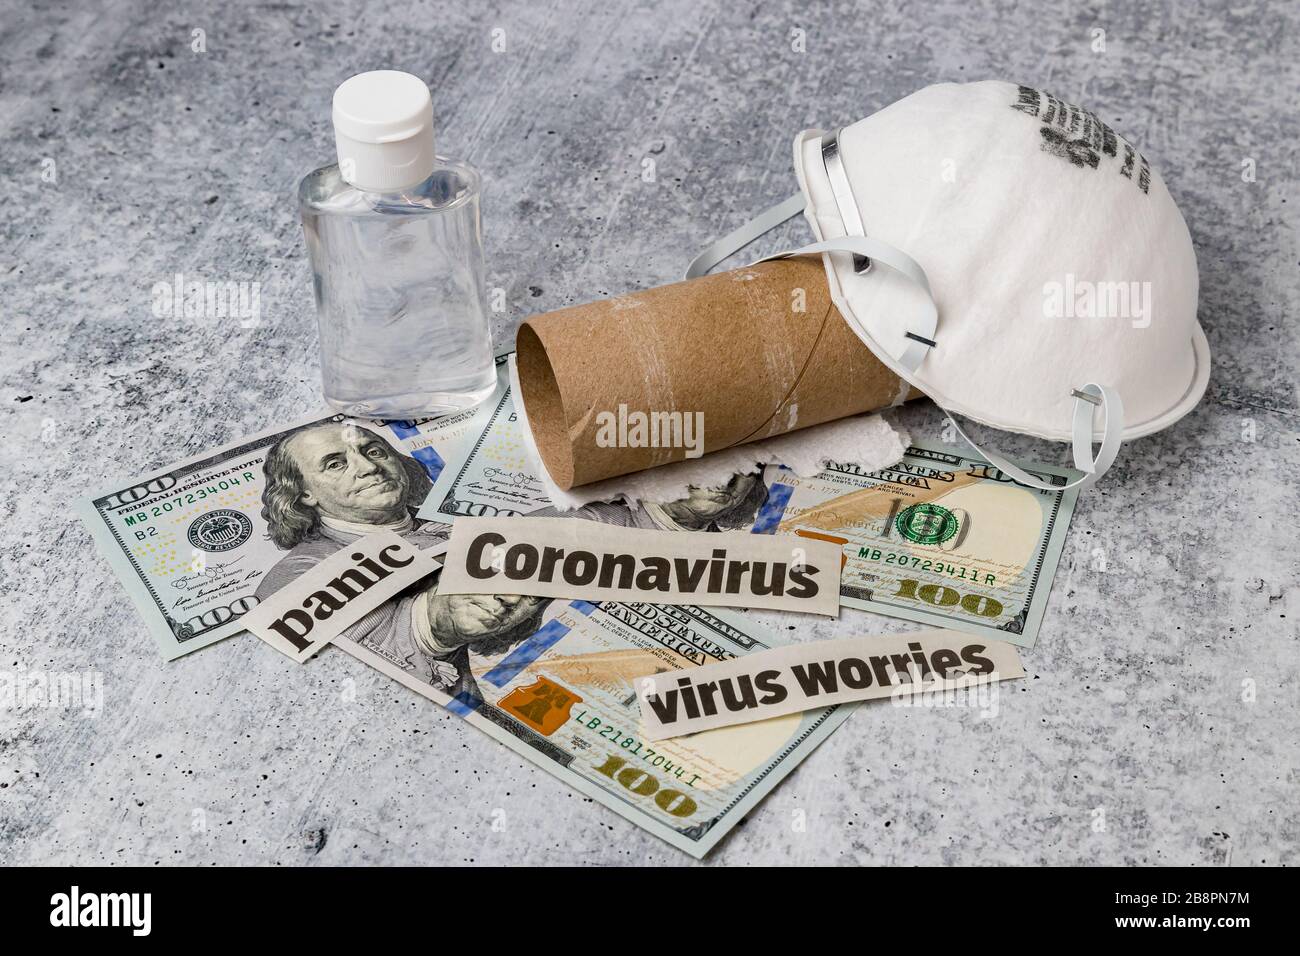 Covid-19 coronavirus notizie titoli, maschera respiratore N95, bottiglia igienizzante per le mani, denaro e rotolo di carta igienica vuoto. Concetto di carenza della domanda di offerta Foto Stock